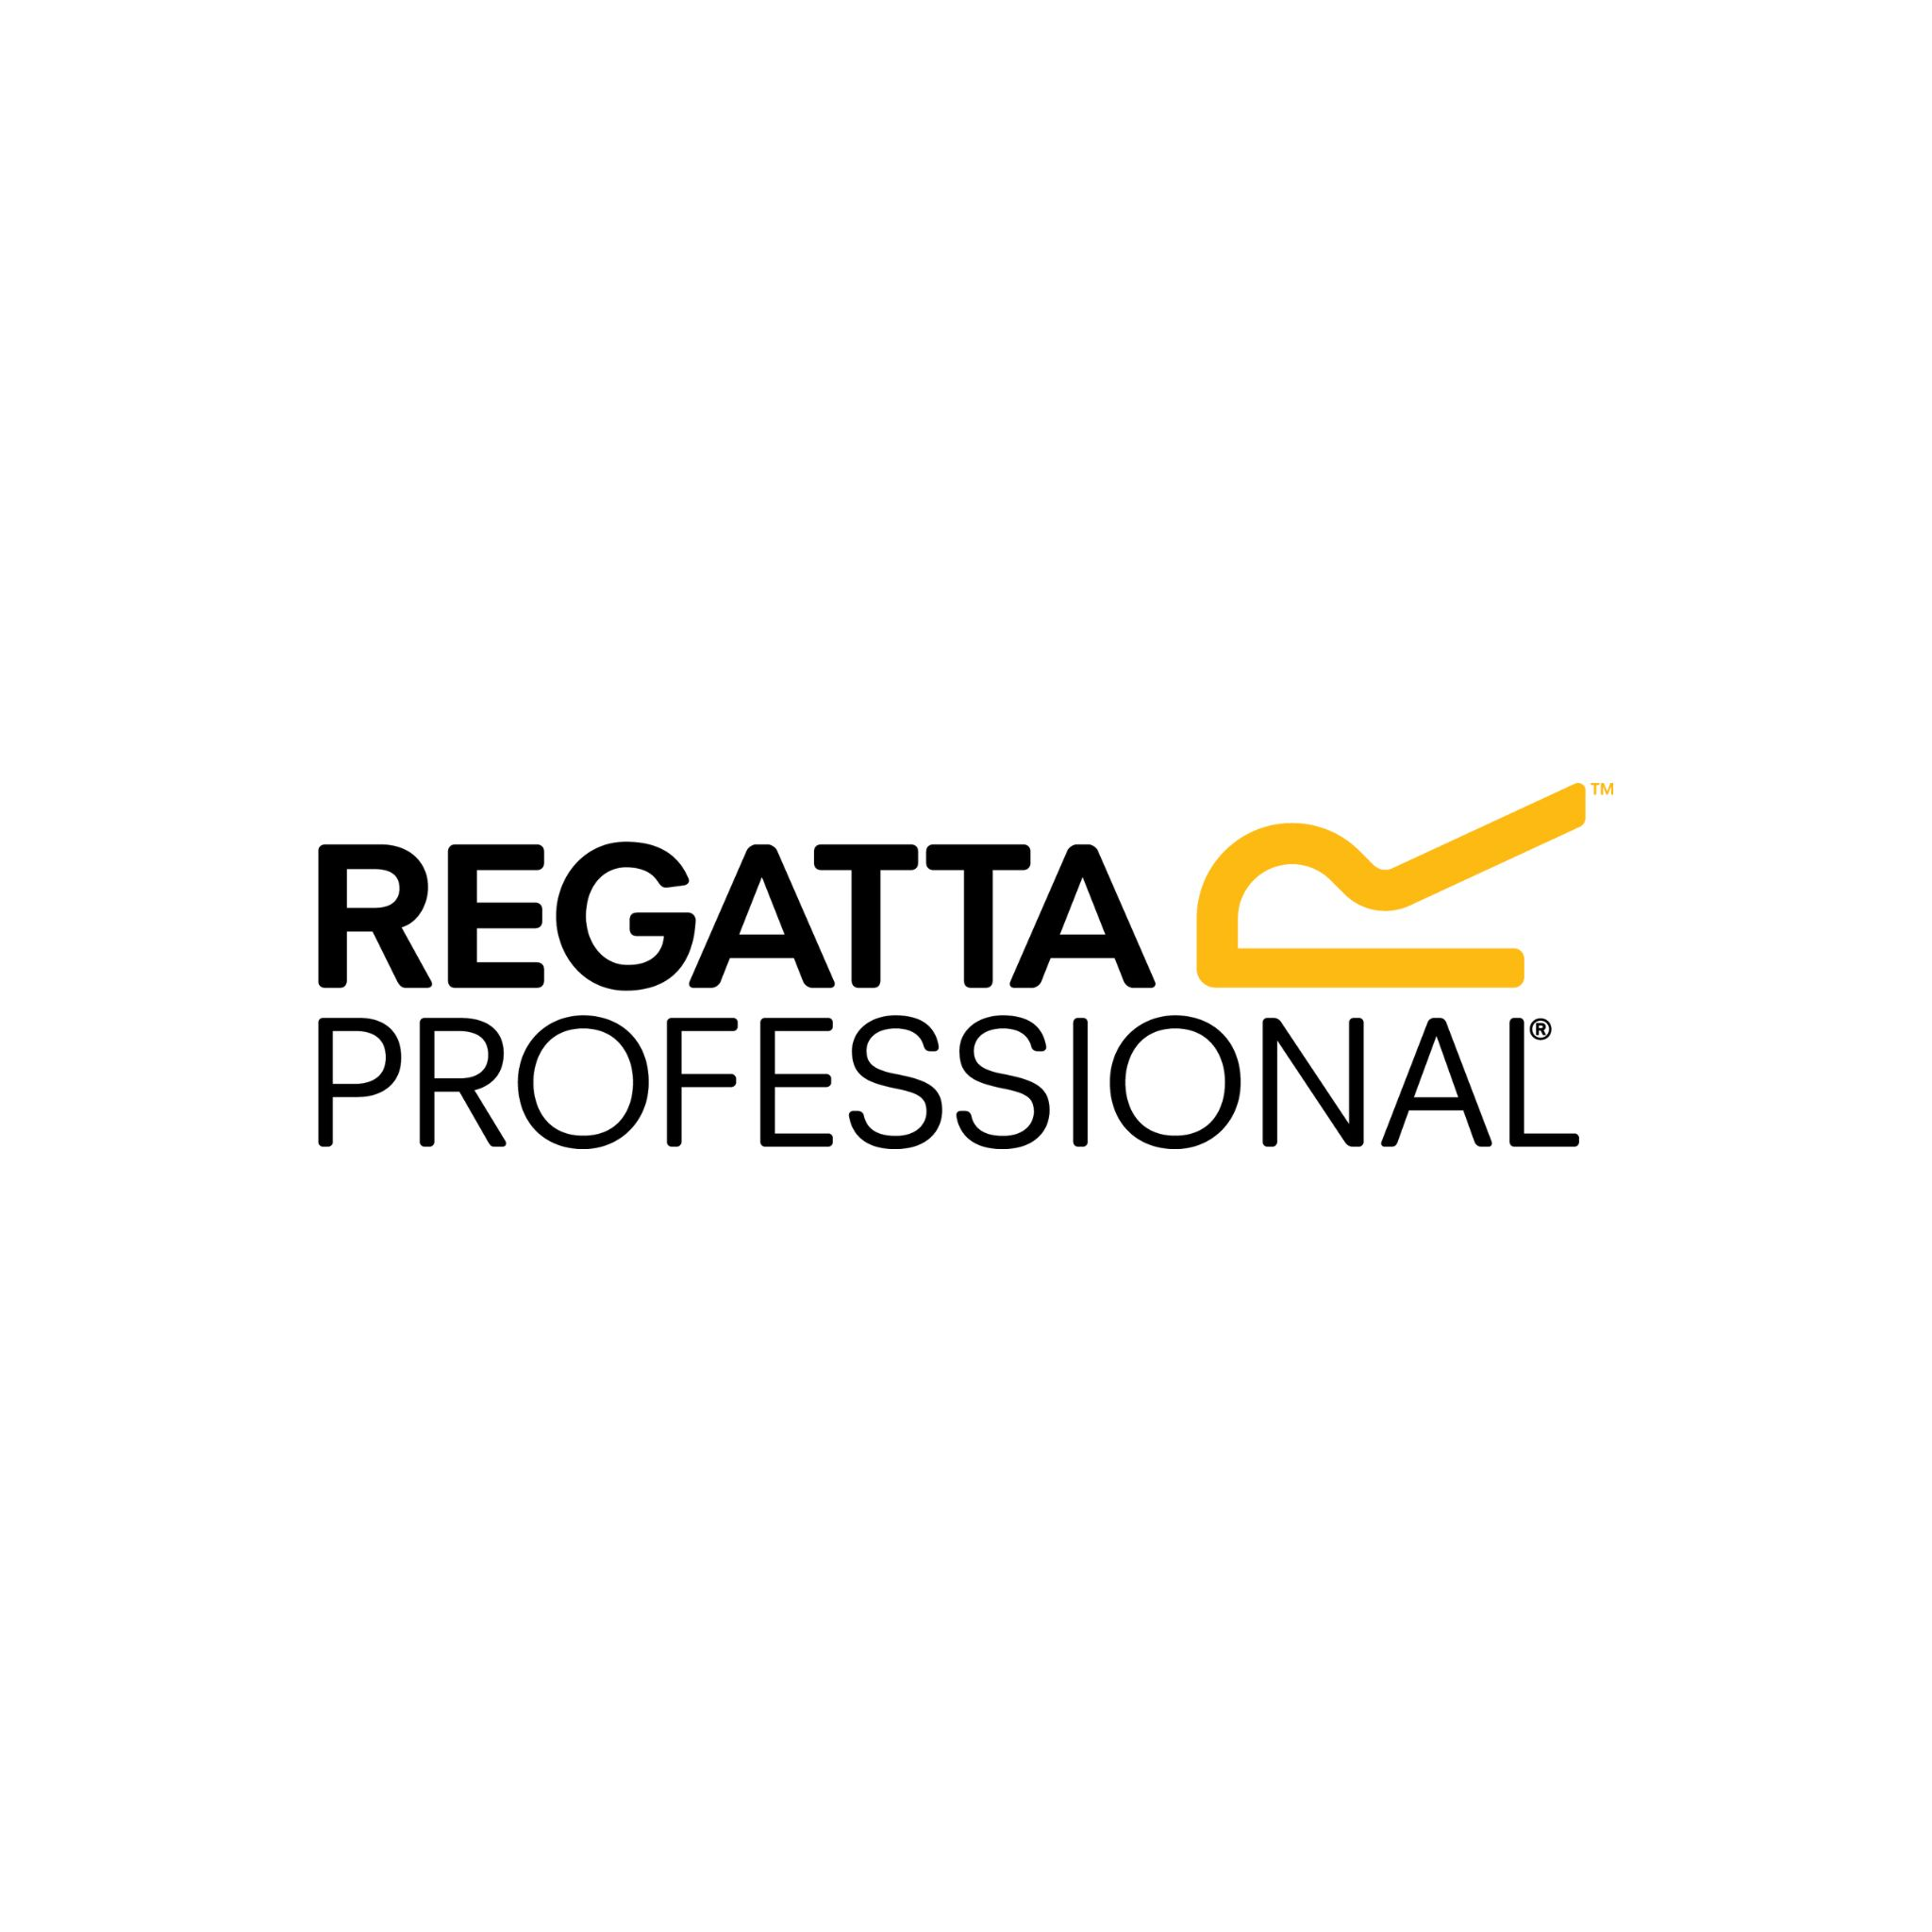 The Regatta Professional Logo